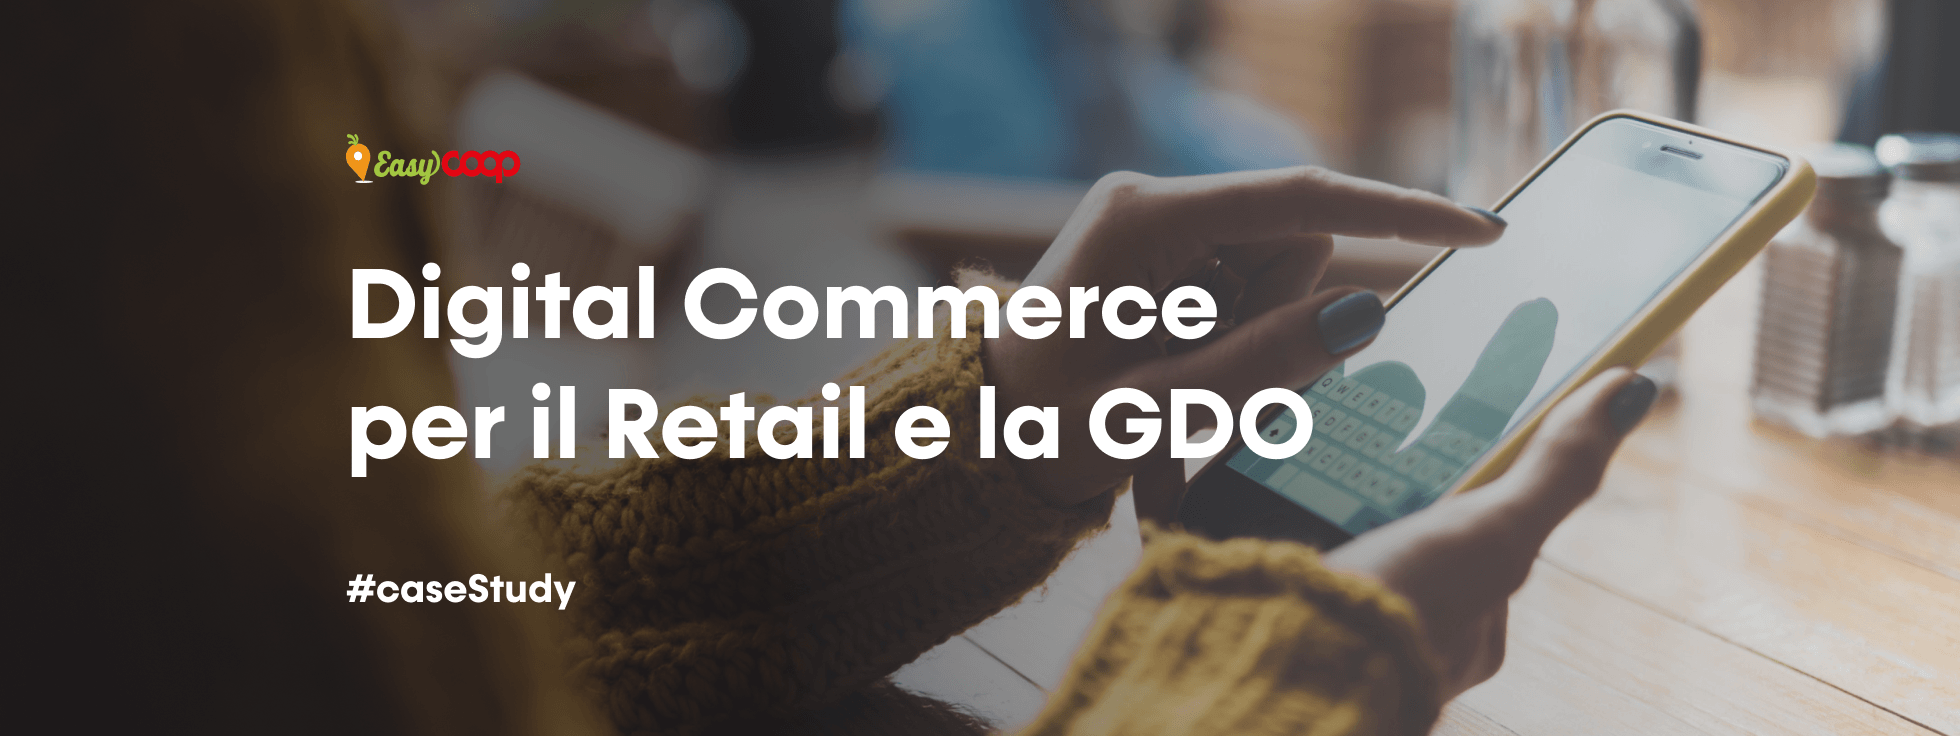 Digital commerce per il retail e la GDO